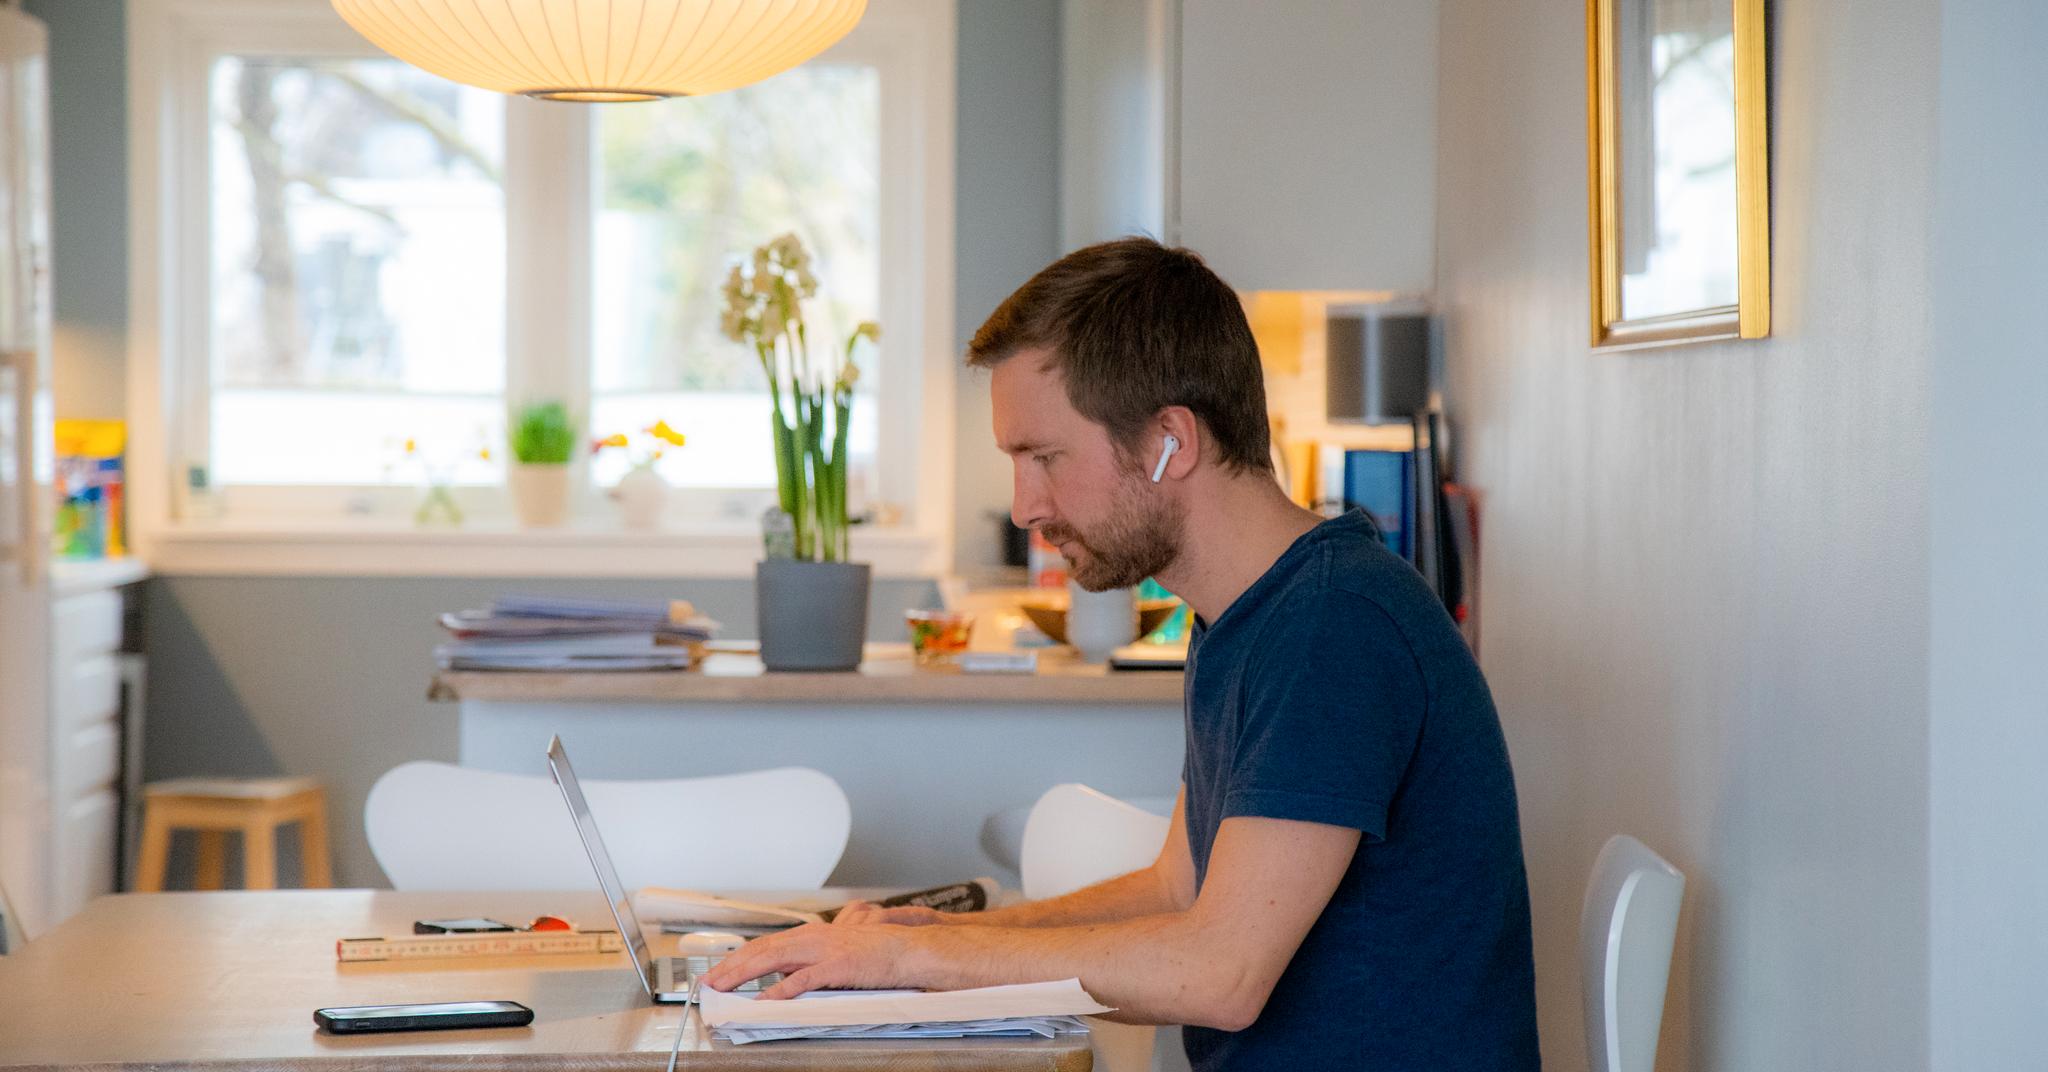 50 prosent av norske arbeidstagere kan fortsatt jobbe hjemmefra, ifølge AFI ved Oslo Met. 